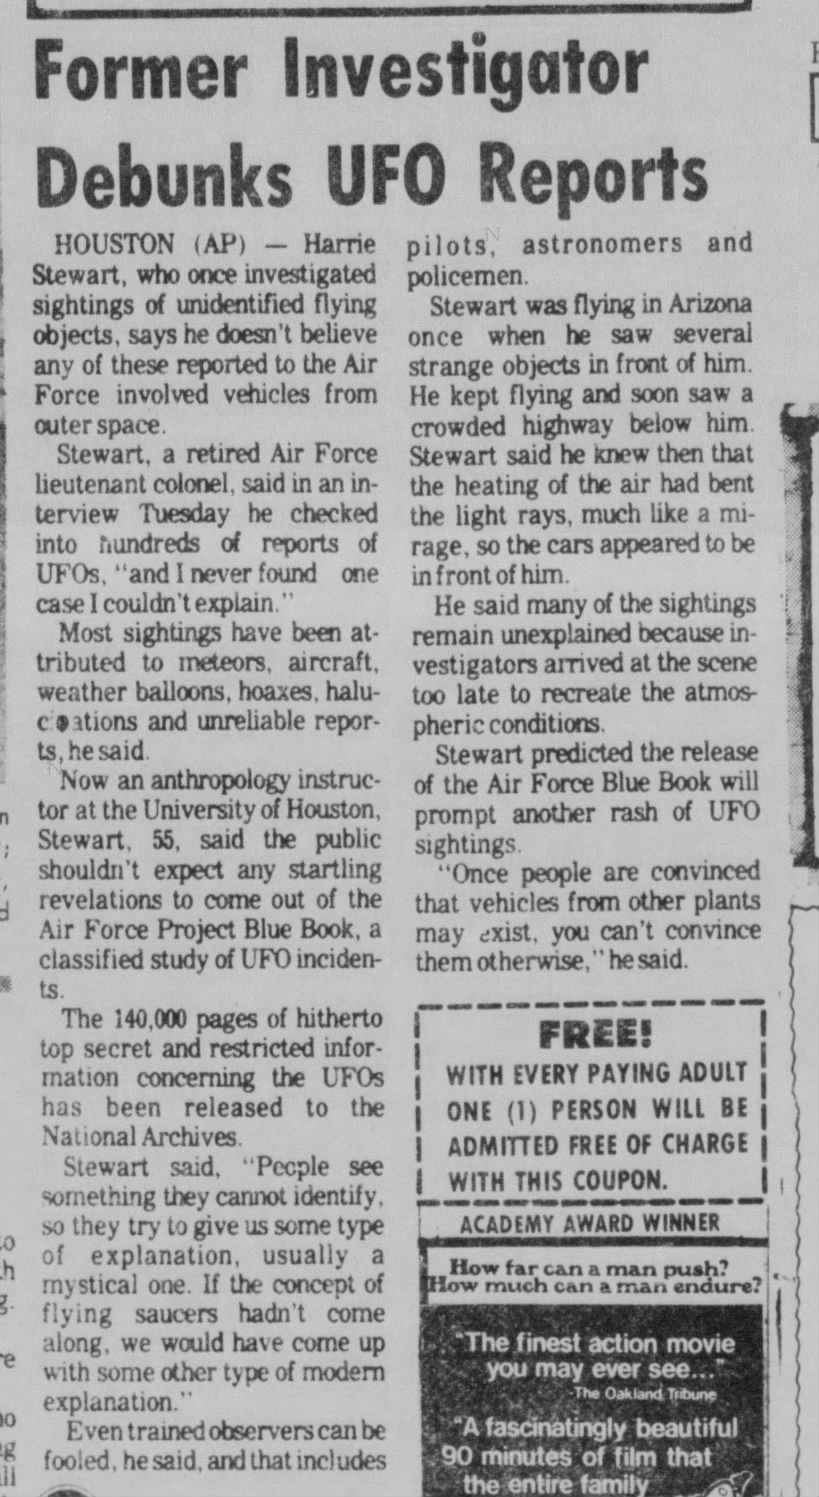 Debunks UFO Reports - VMS Jul 21 1976